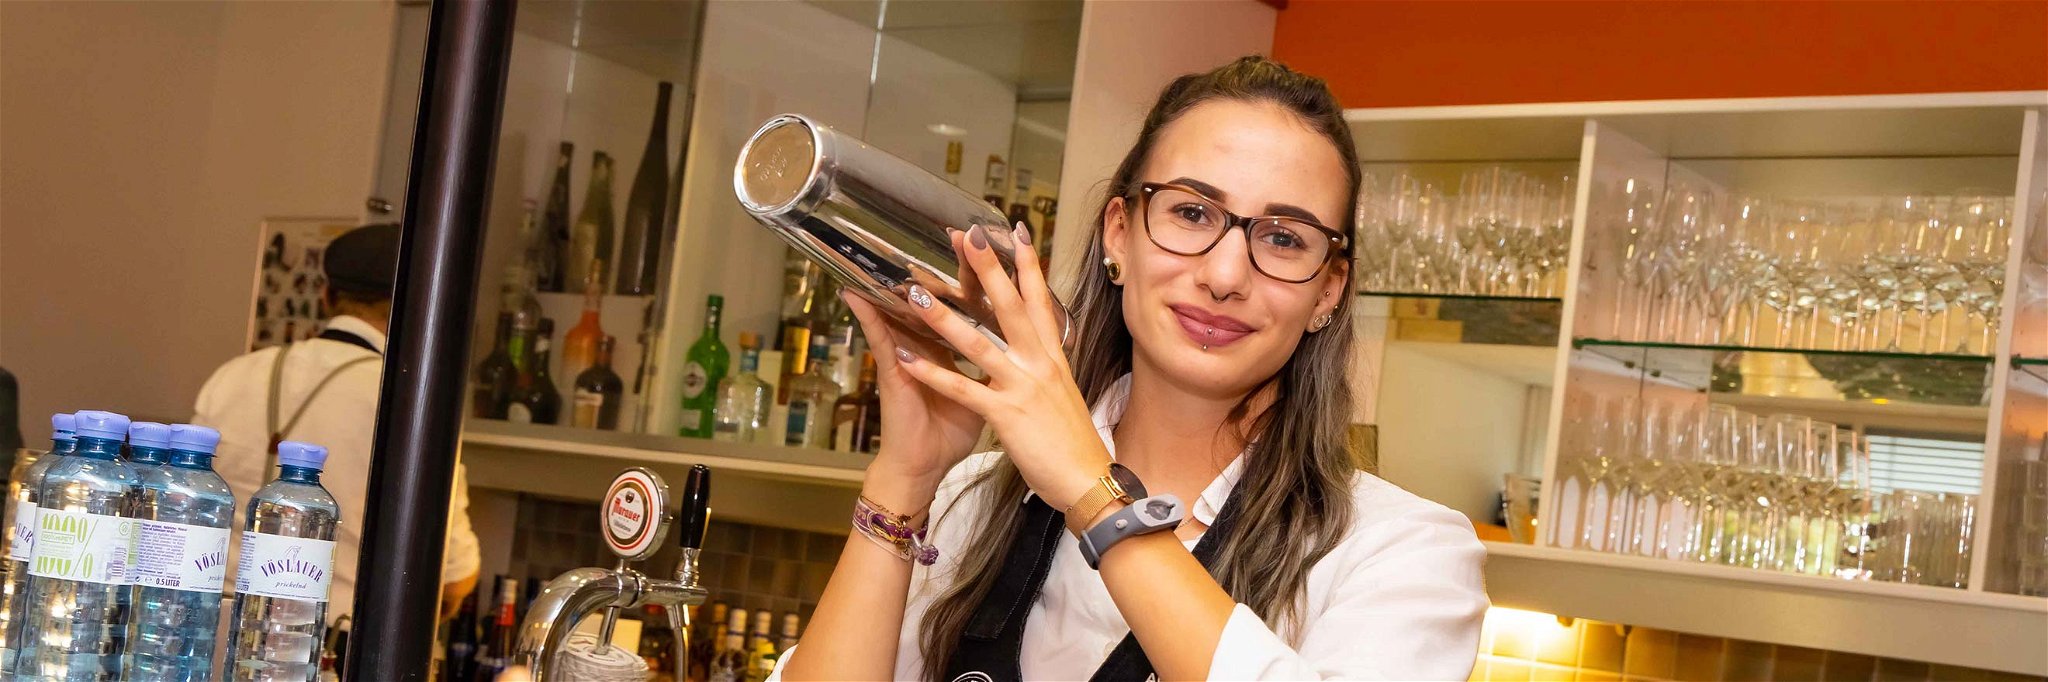 Alexandra Weiss – Teilnehmerin des Falstaff Young Talents Cup 2020 in der Kategorie Bar.